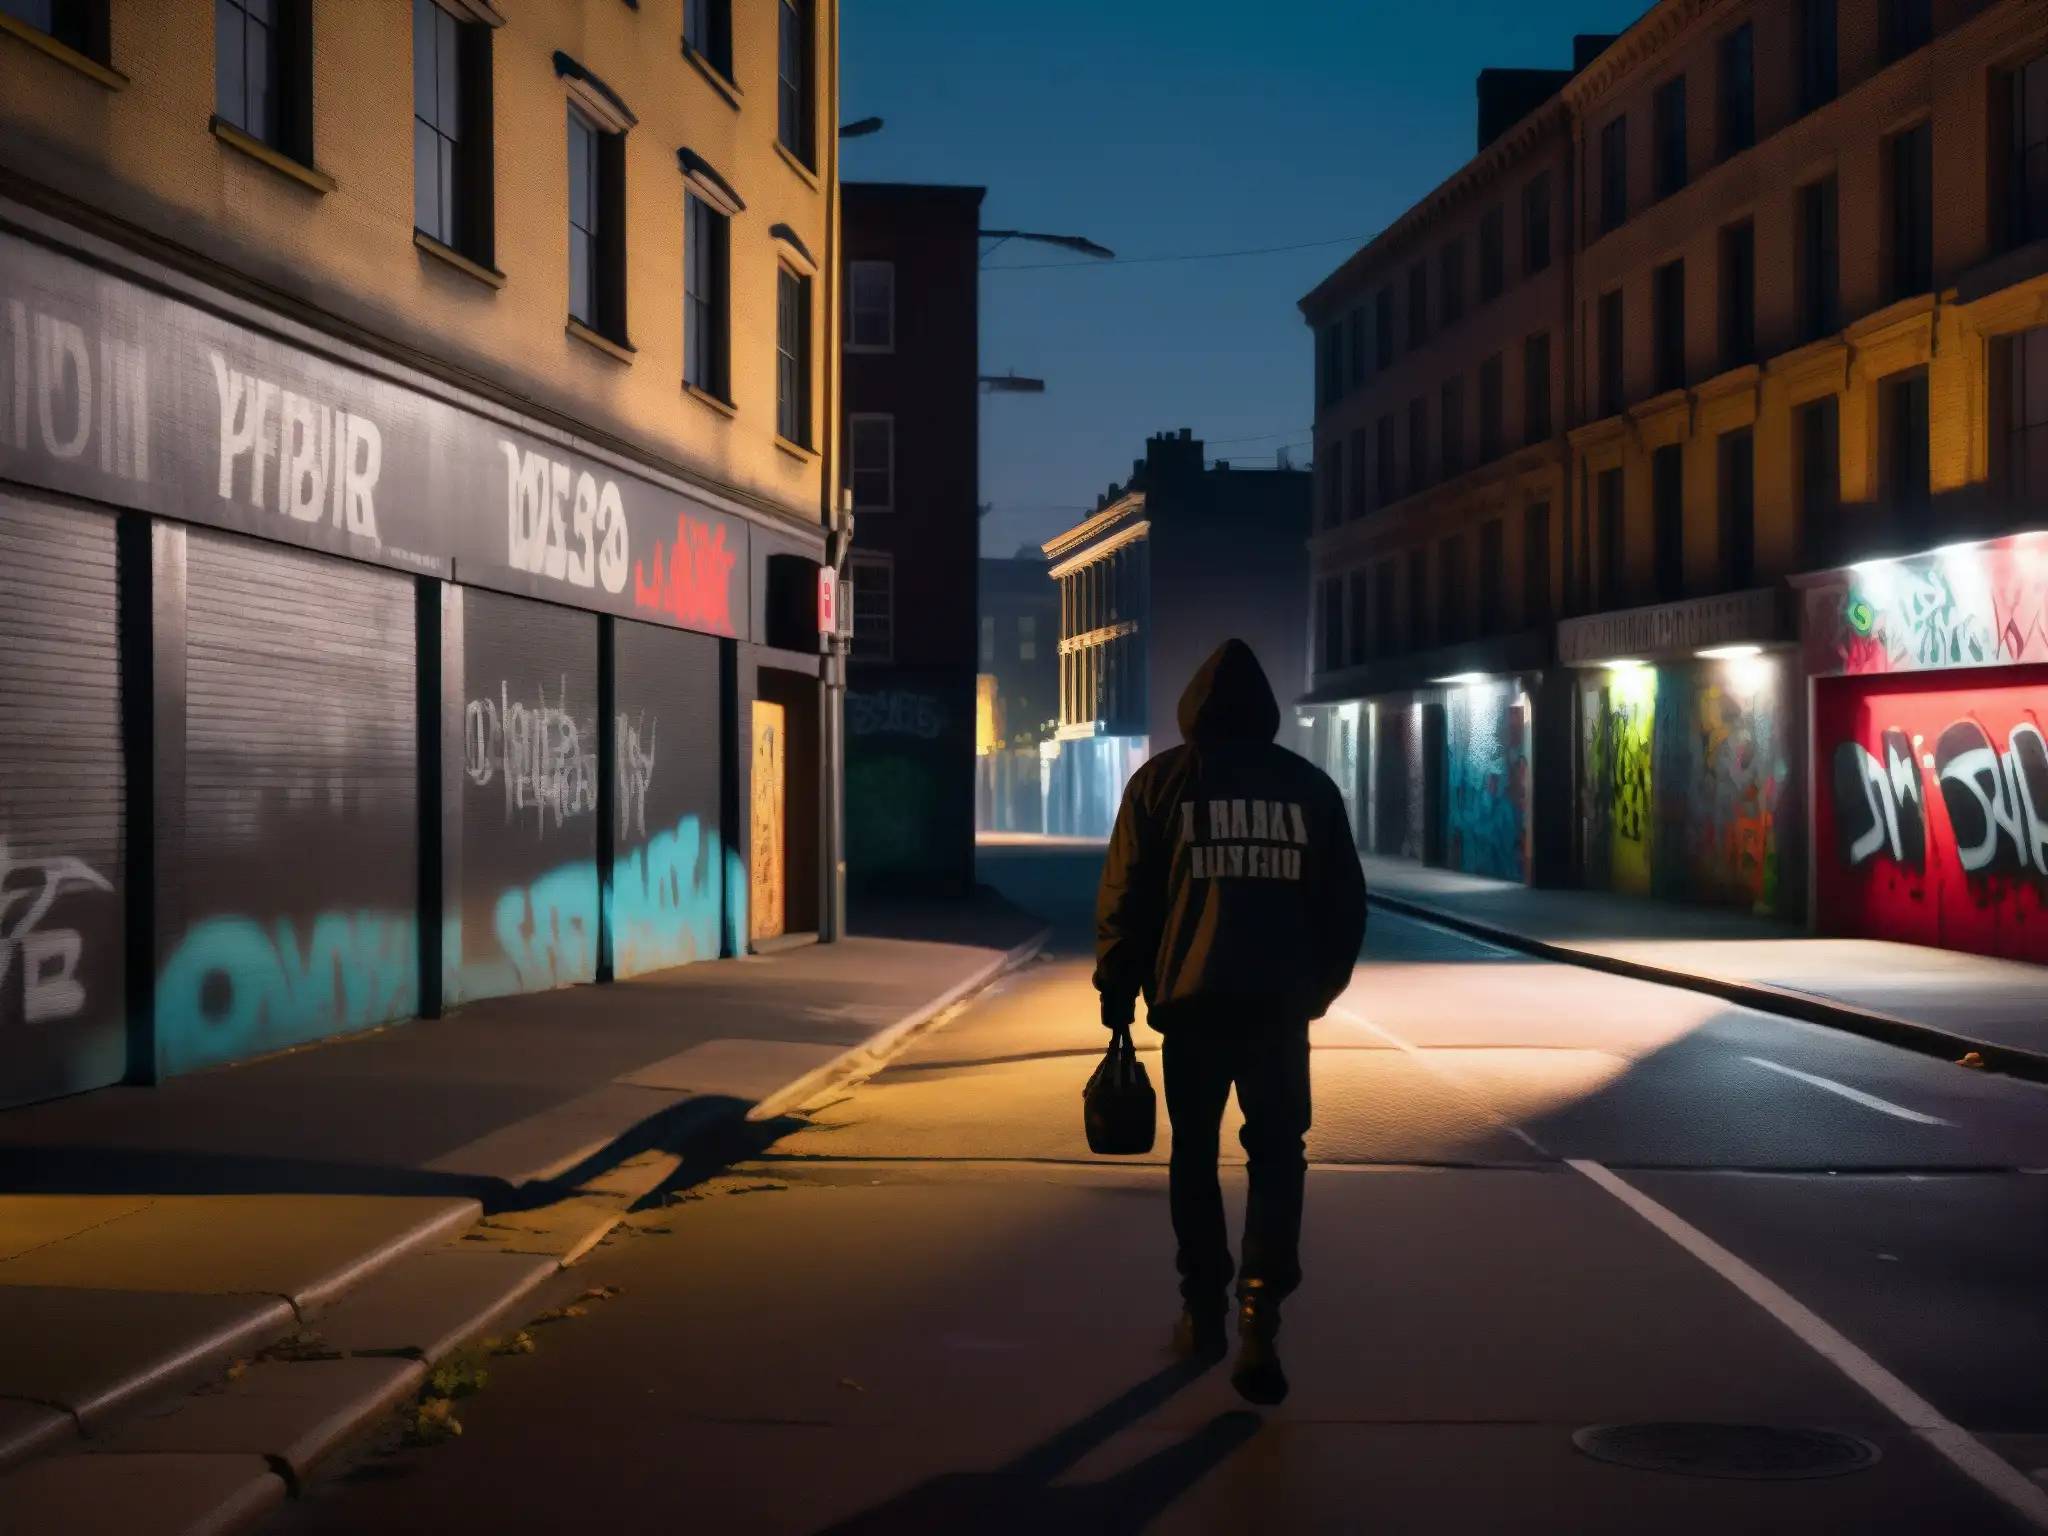 Silueta solitaria camina en la noche urbana, impacto leyendas urbanas ansiedad social